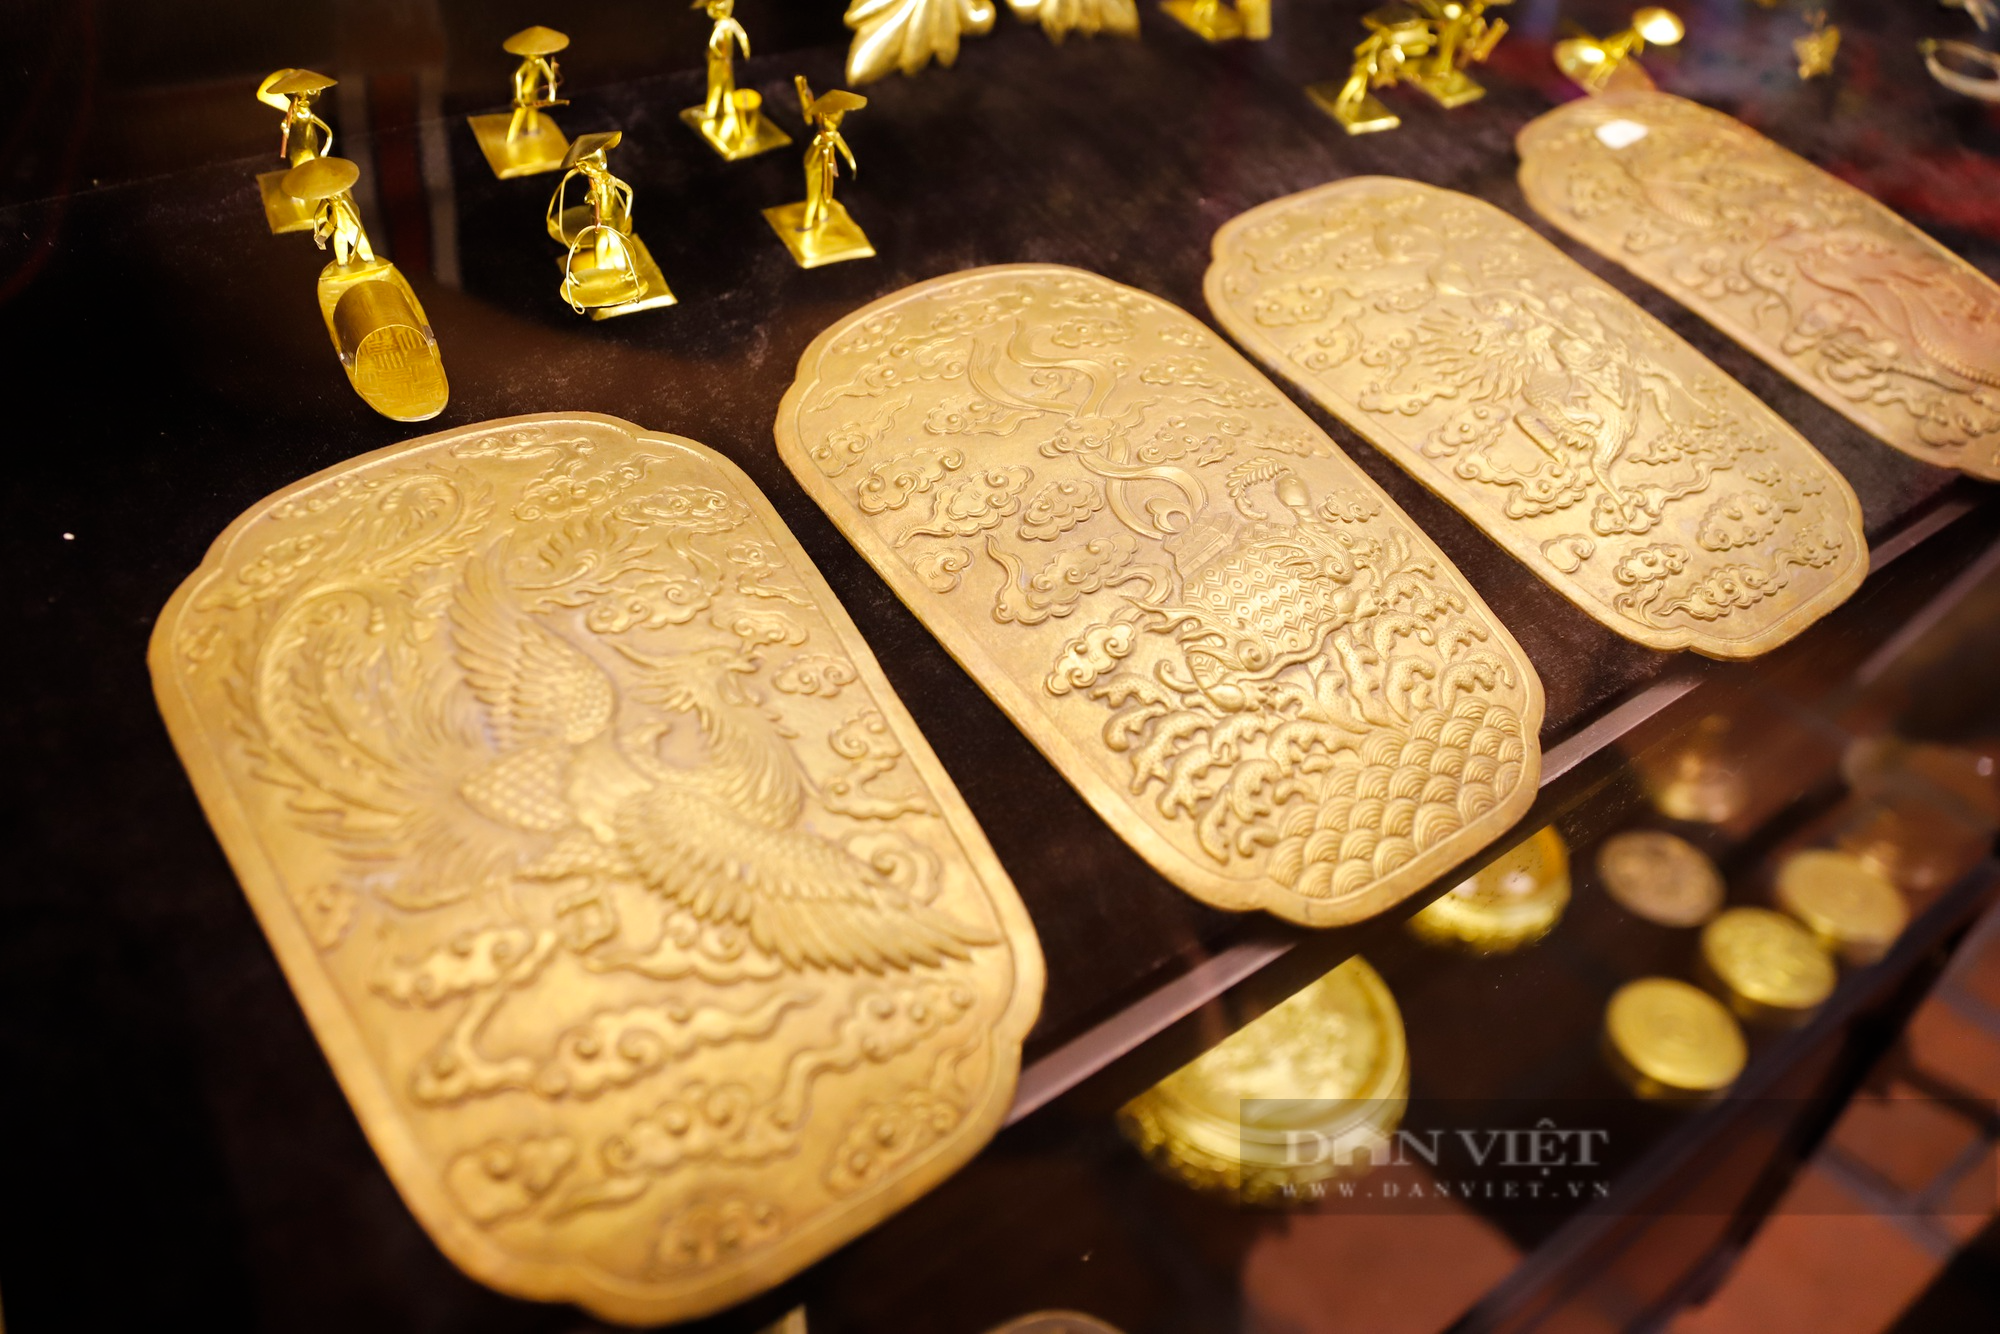 Những sản phẩm in đậm dấu ấn trăm năm nghề đúc vàng, bạc tại ngôi đình cổ giữa lòng phố cố Hà Nội - Ảnh 10.